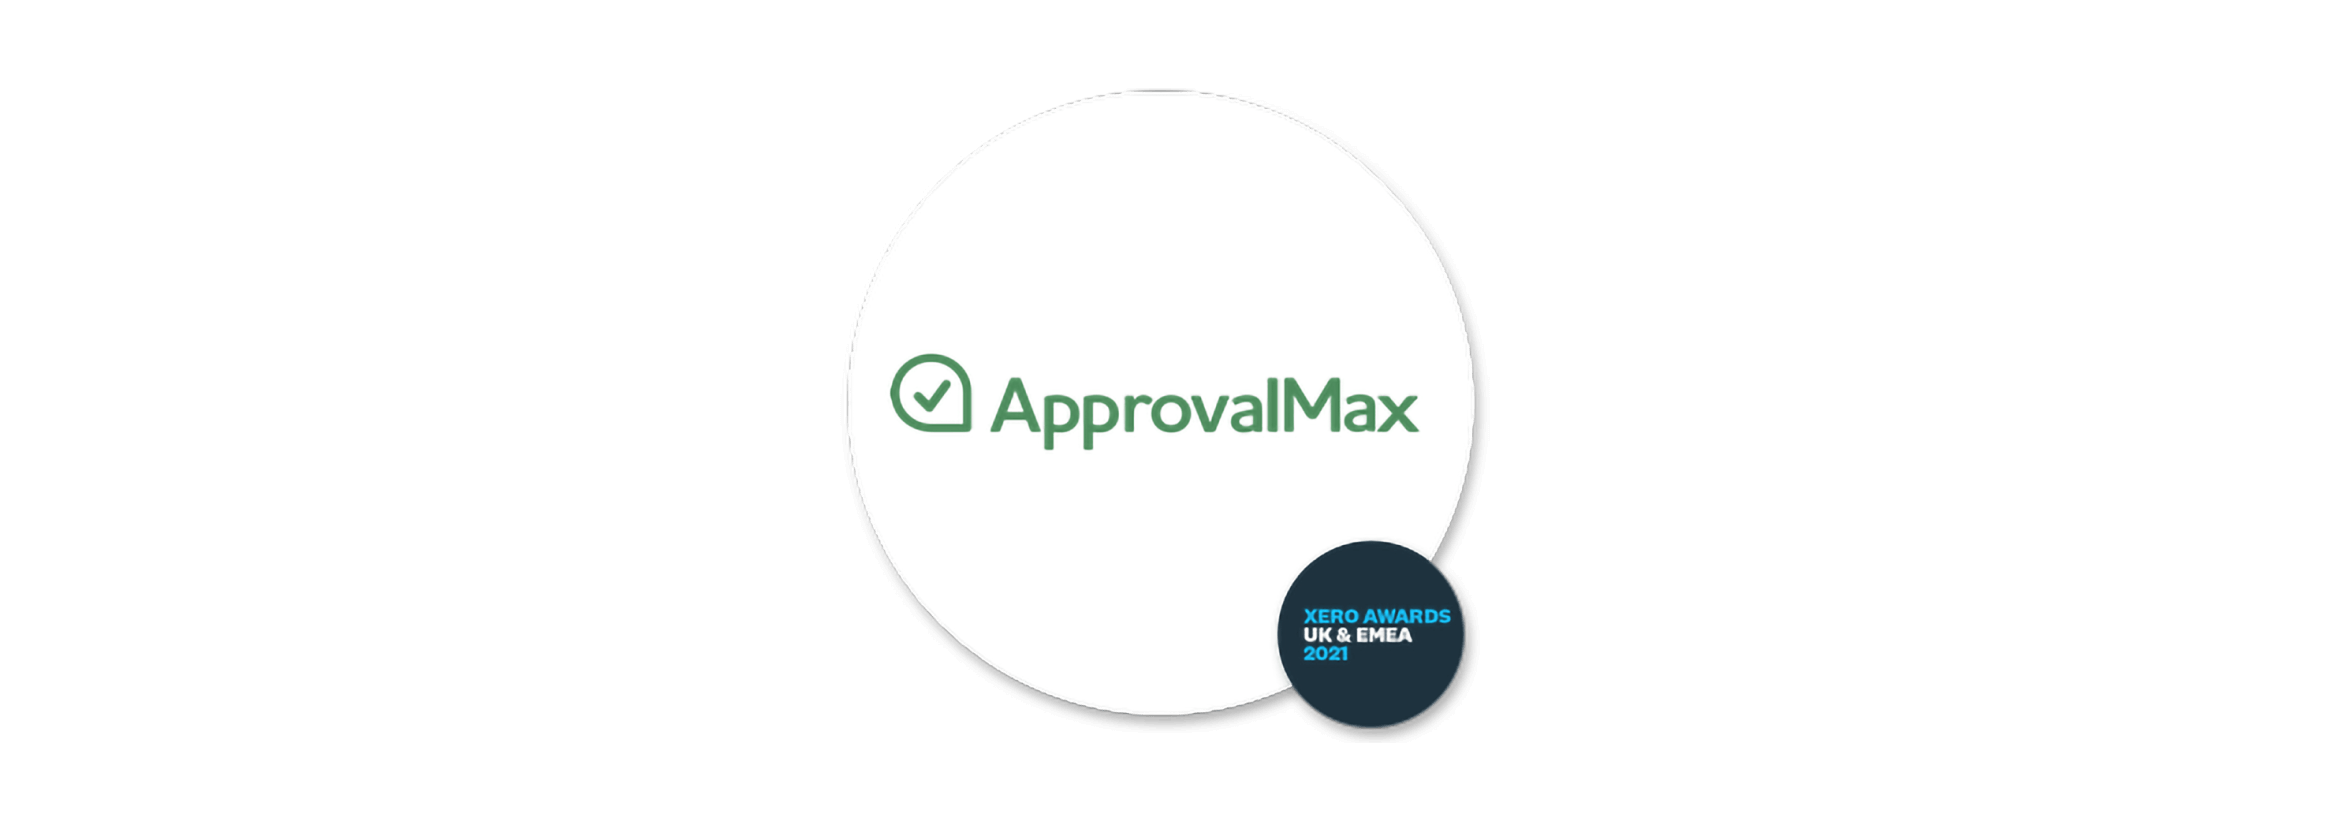 Logo of ApprovalMax